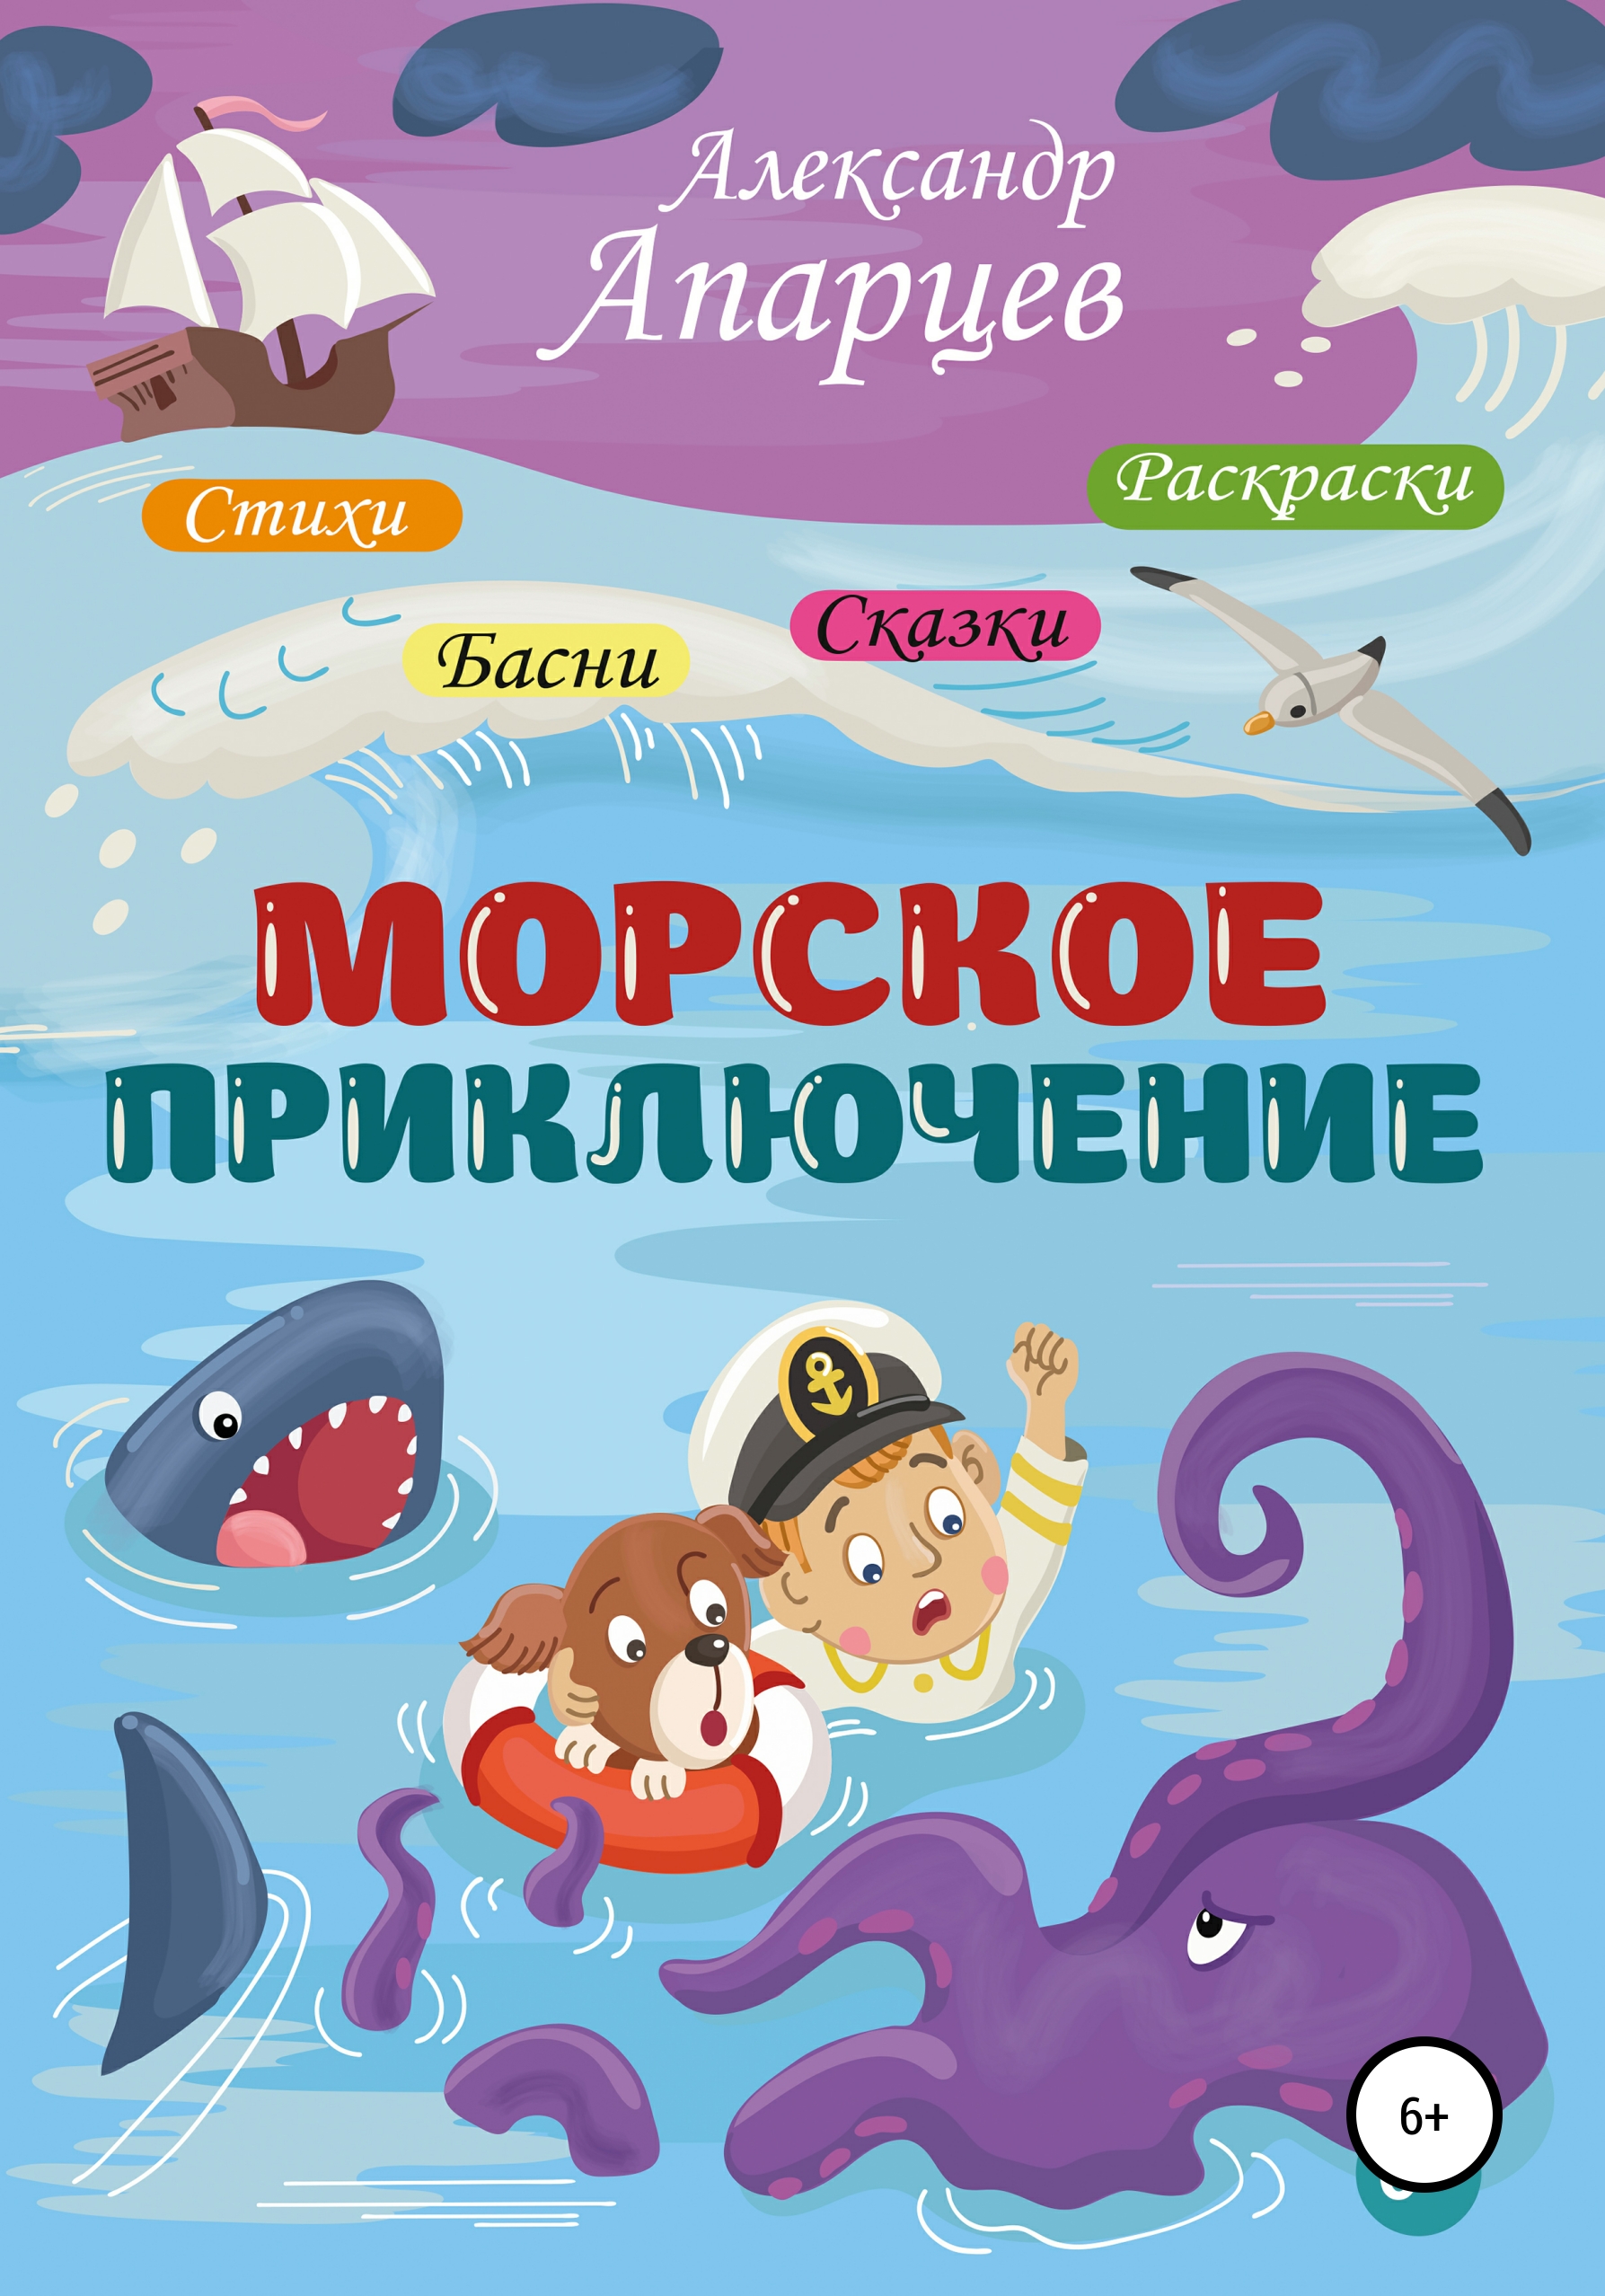 Книги про морские приключения для детей. Морское приключение. Морская литература для детей. Морское приключение 2